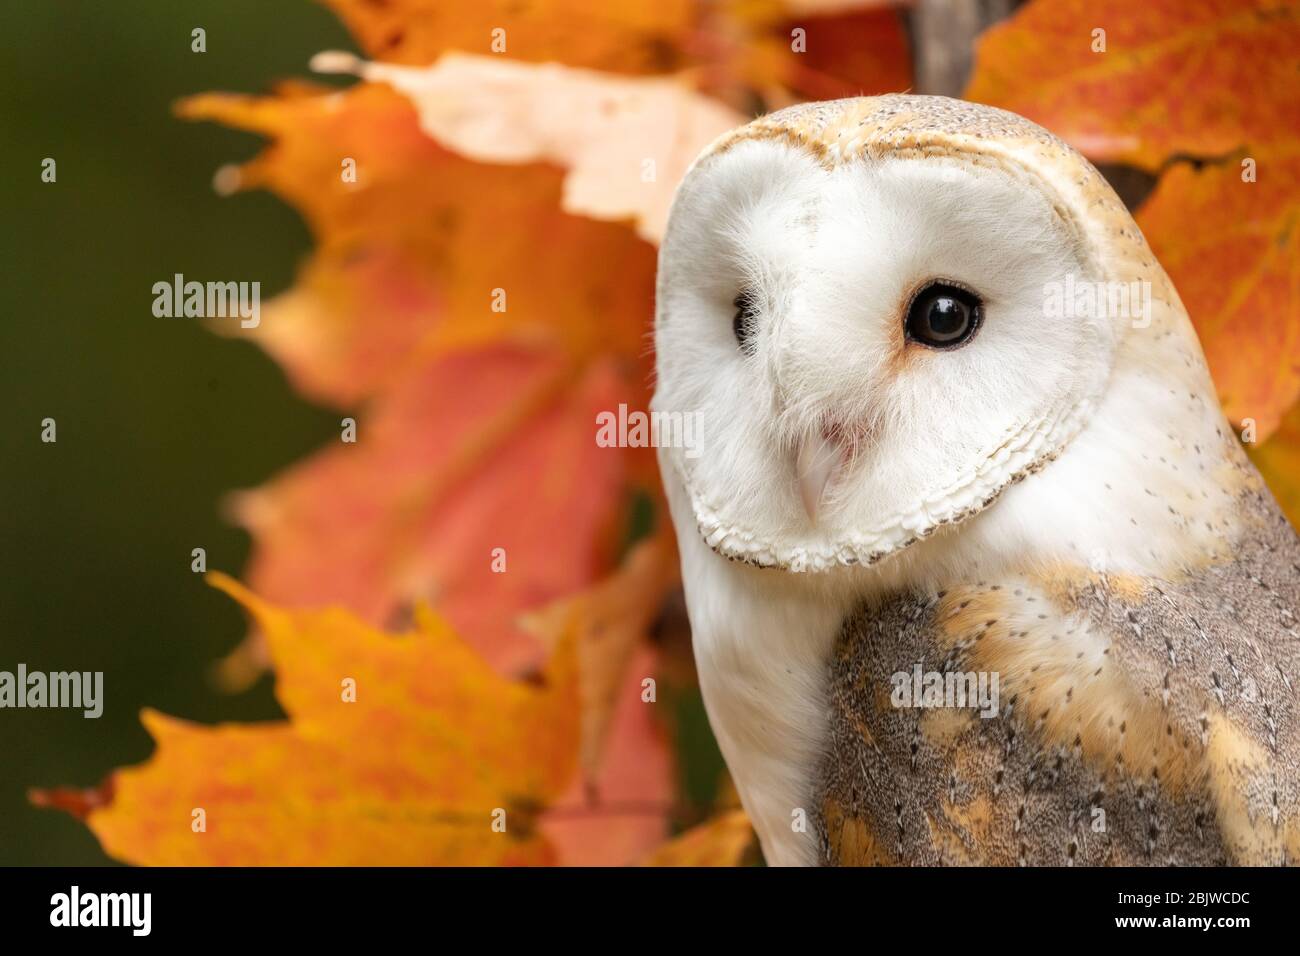 Barn owl in an autumn maple tree Stock Photo